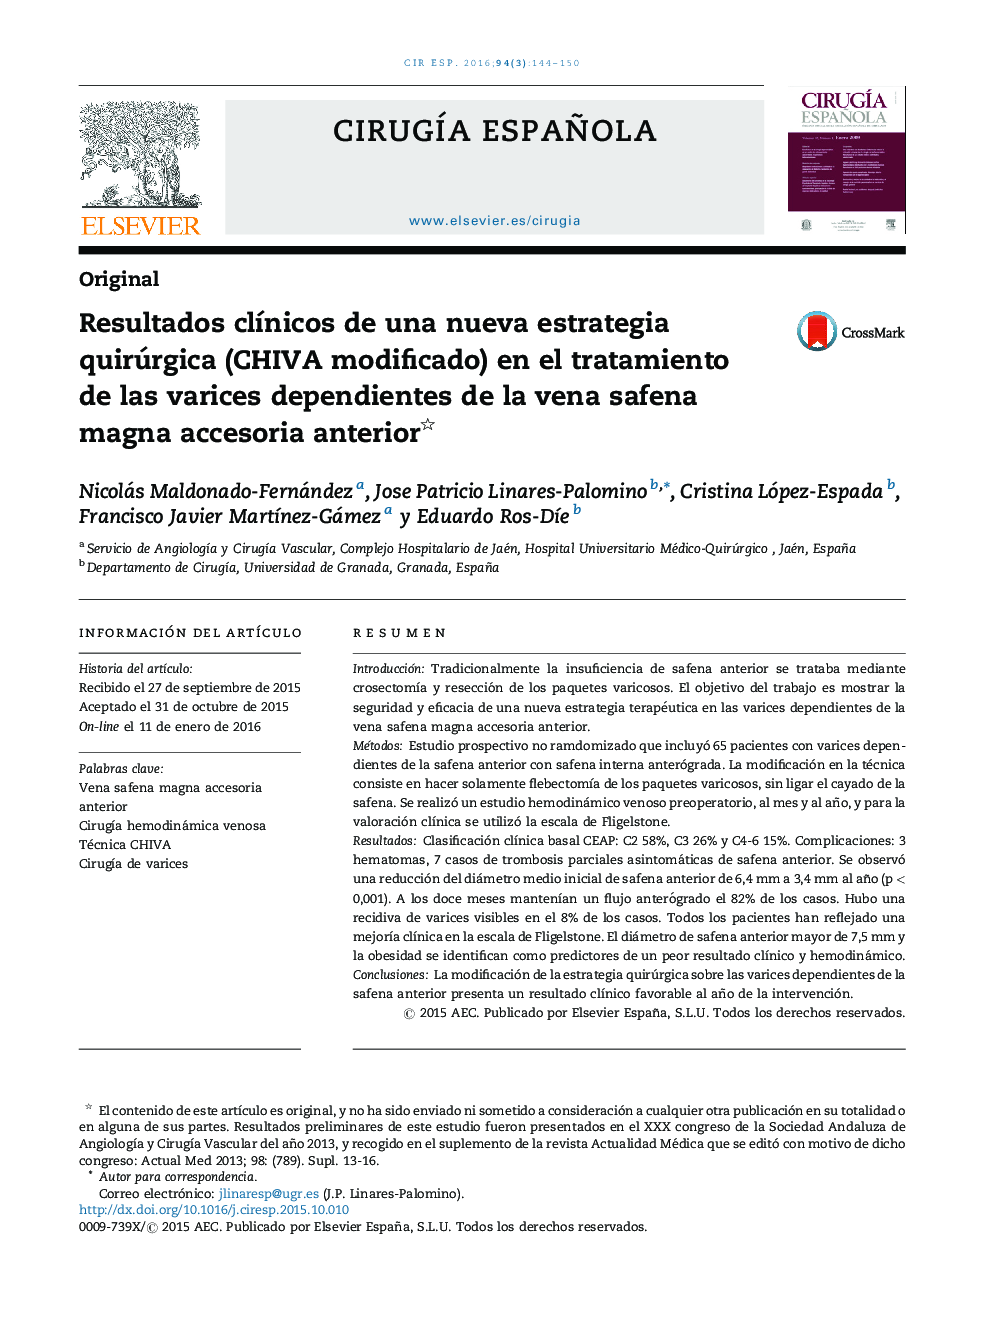 Resultados clínicos de una nueva estrategia quirúrgica (CHIVA modificado) en el tratamiento de las varices dependientes de la vena safena magna accesoria anterior 